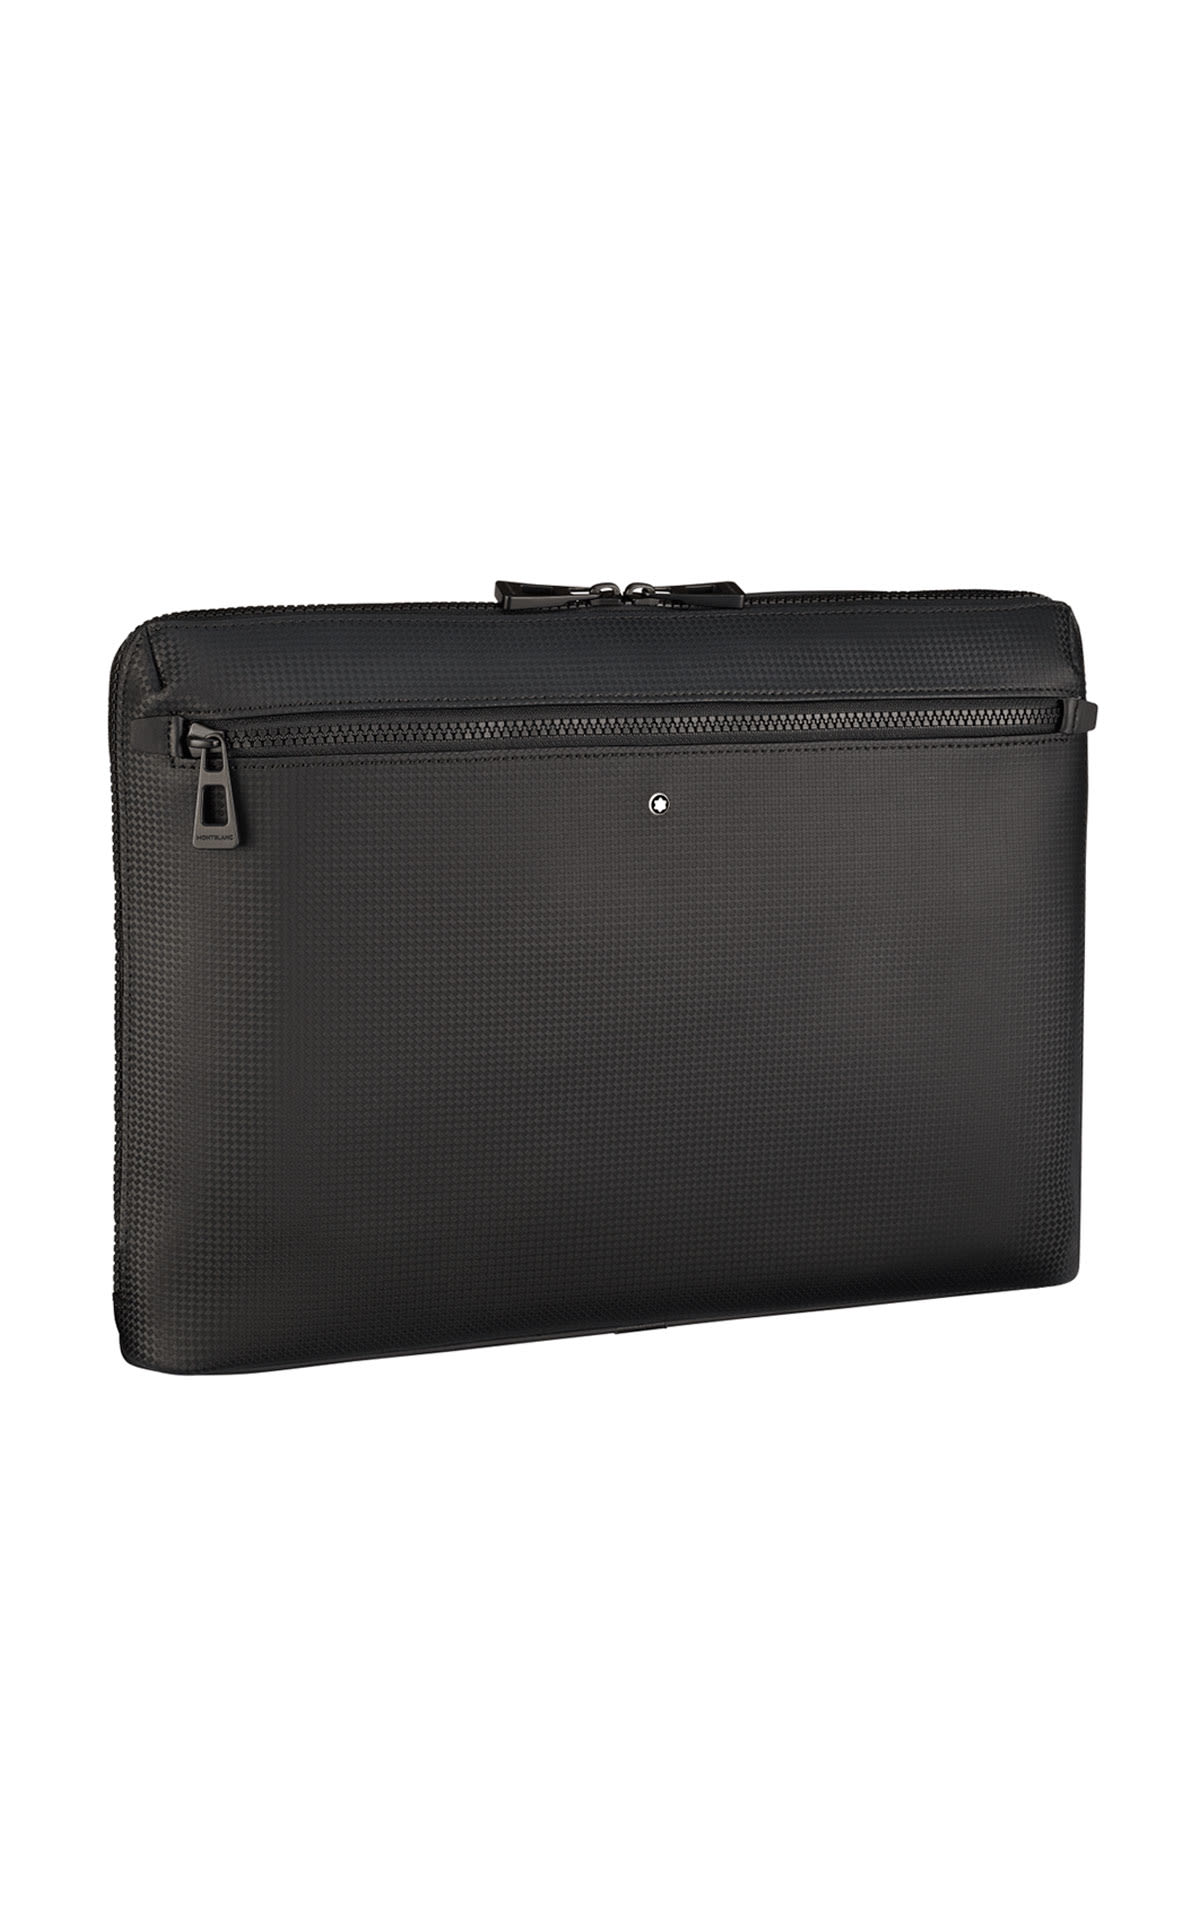 Black laptop bag Montblanc